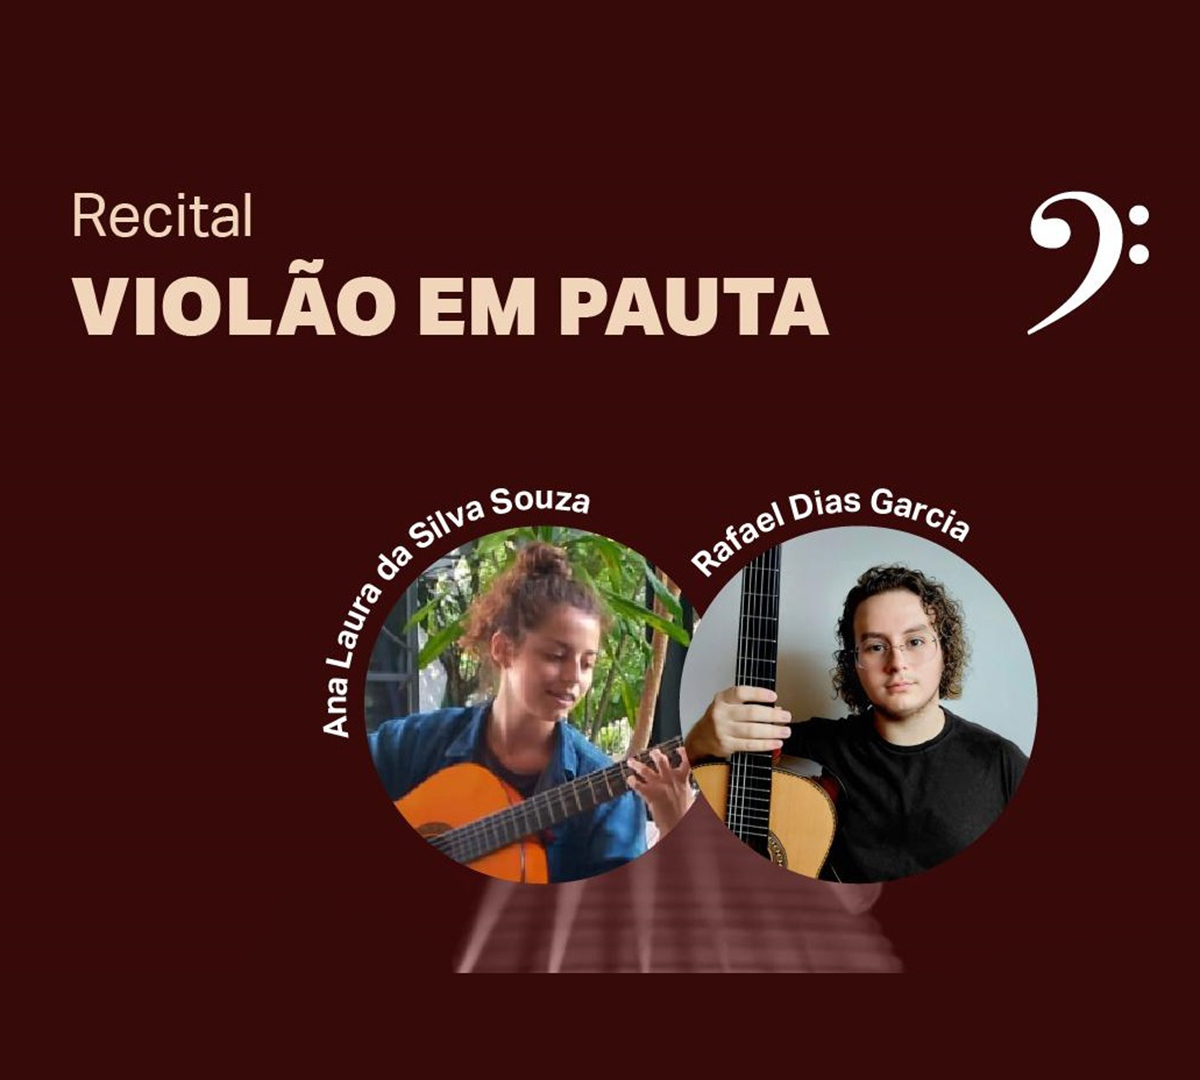 Recital “Violão em Pauta” acontece terça no museu de Tatuí